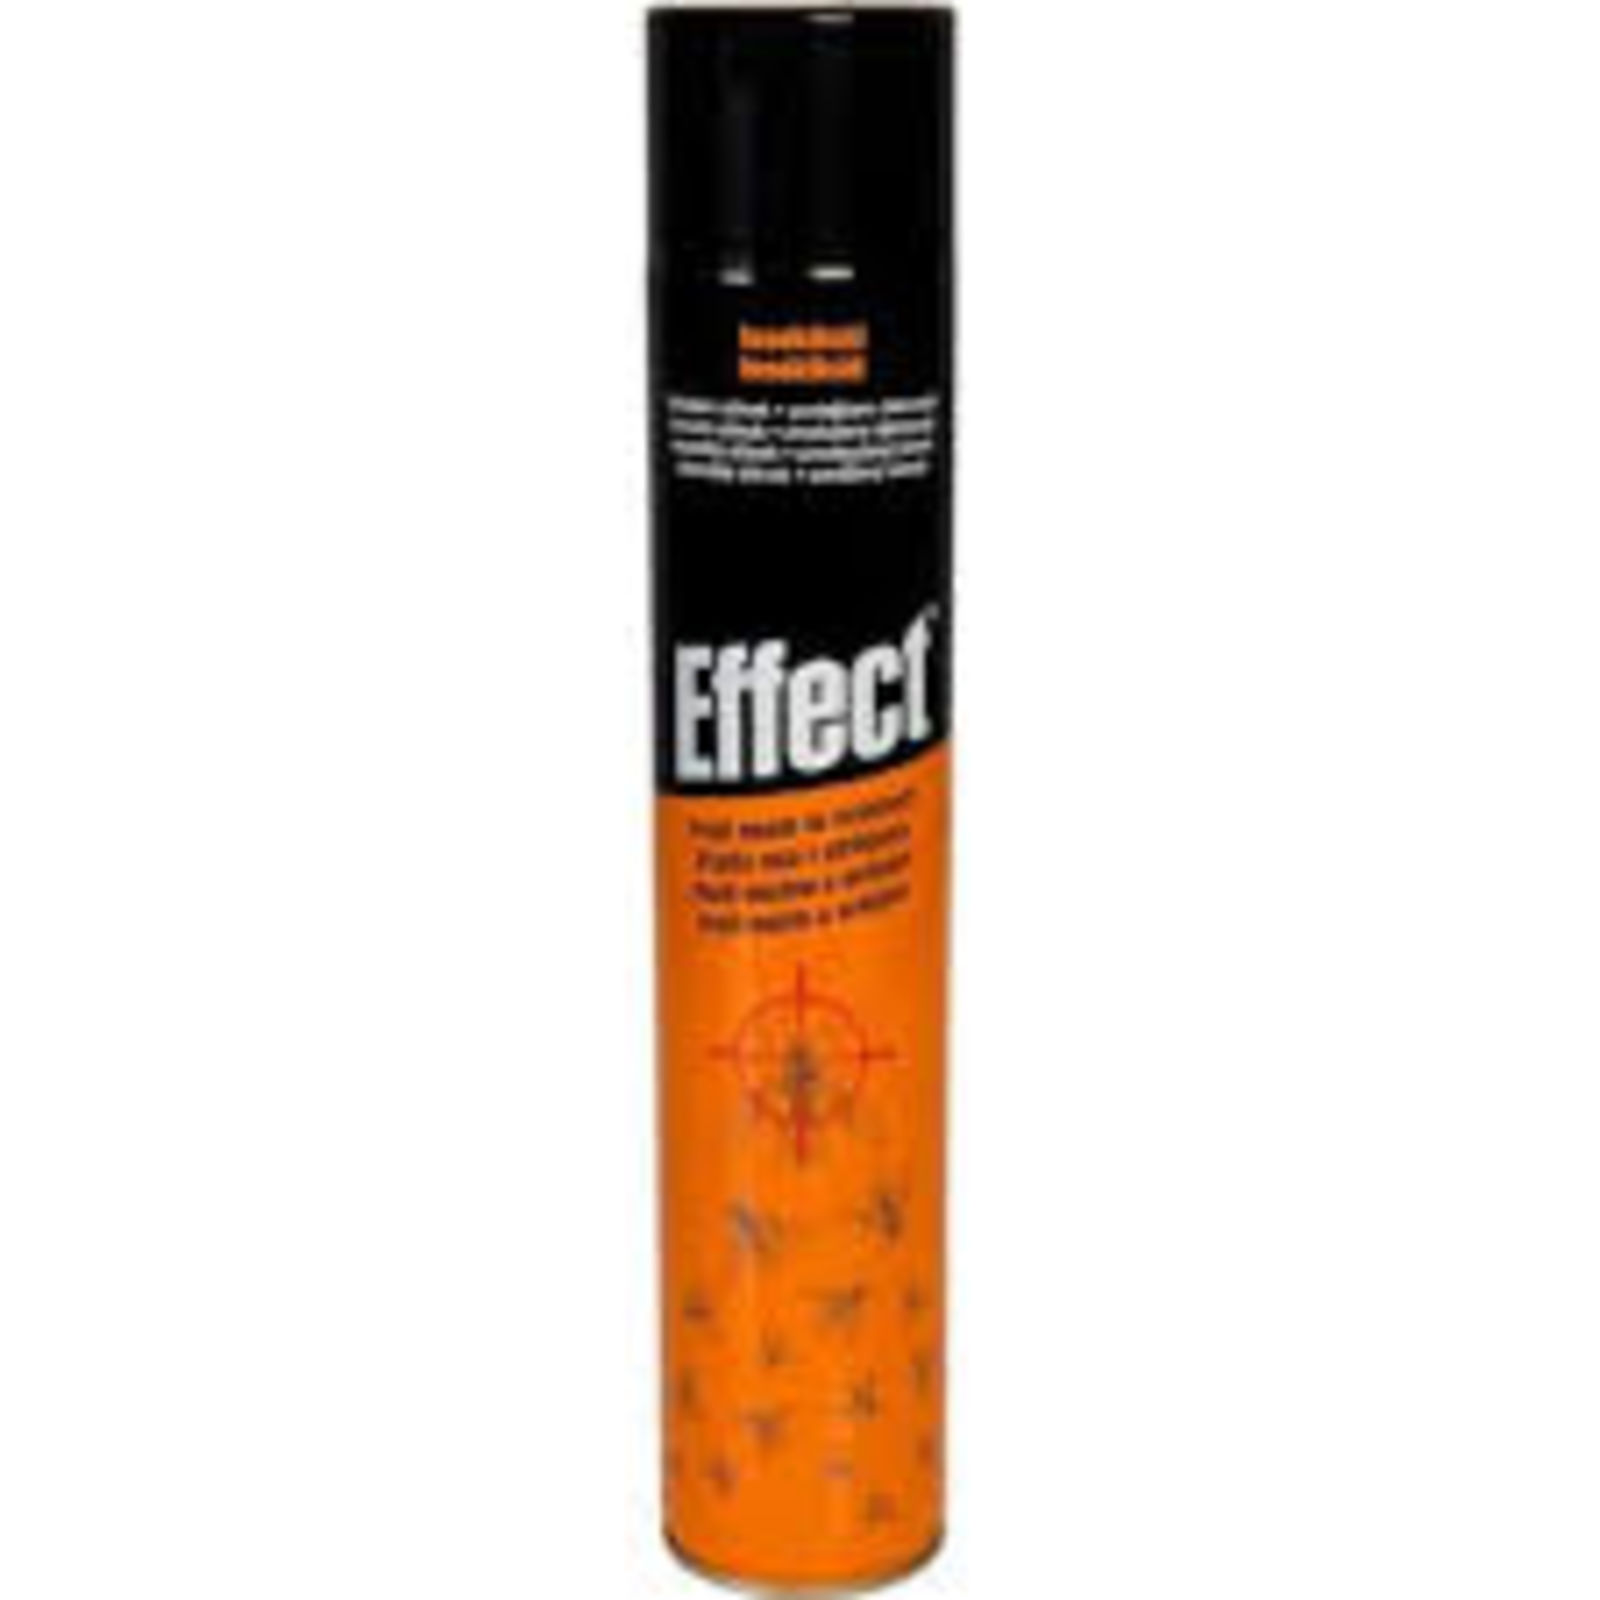 Effect darázsírtó aerosol 750 ml